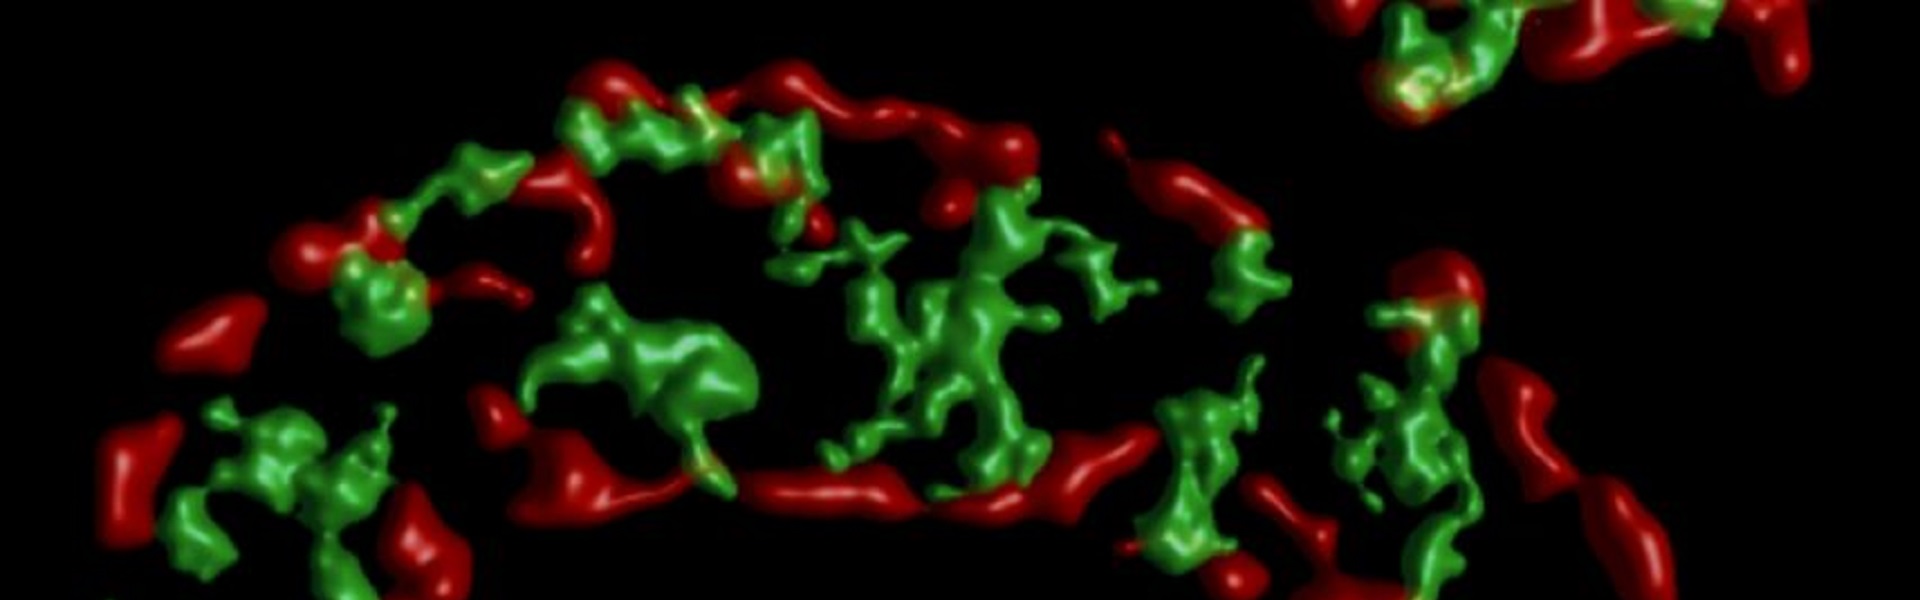 Magnified, false coloured image of mitochondria